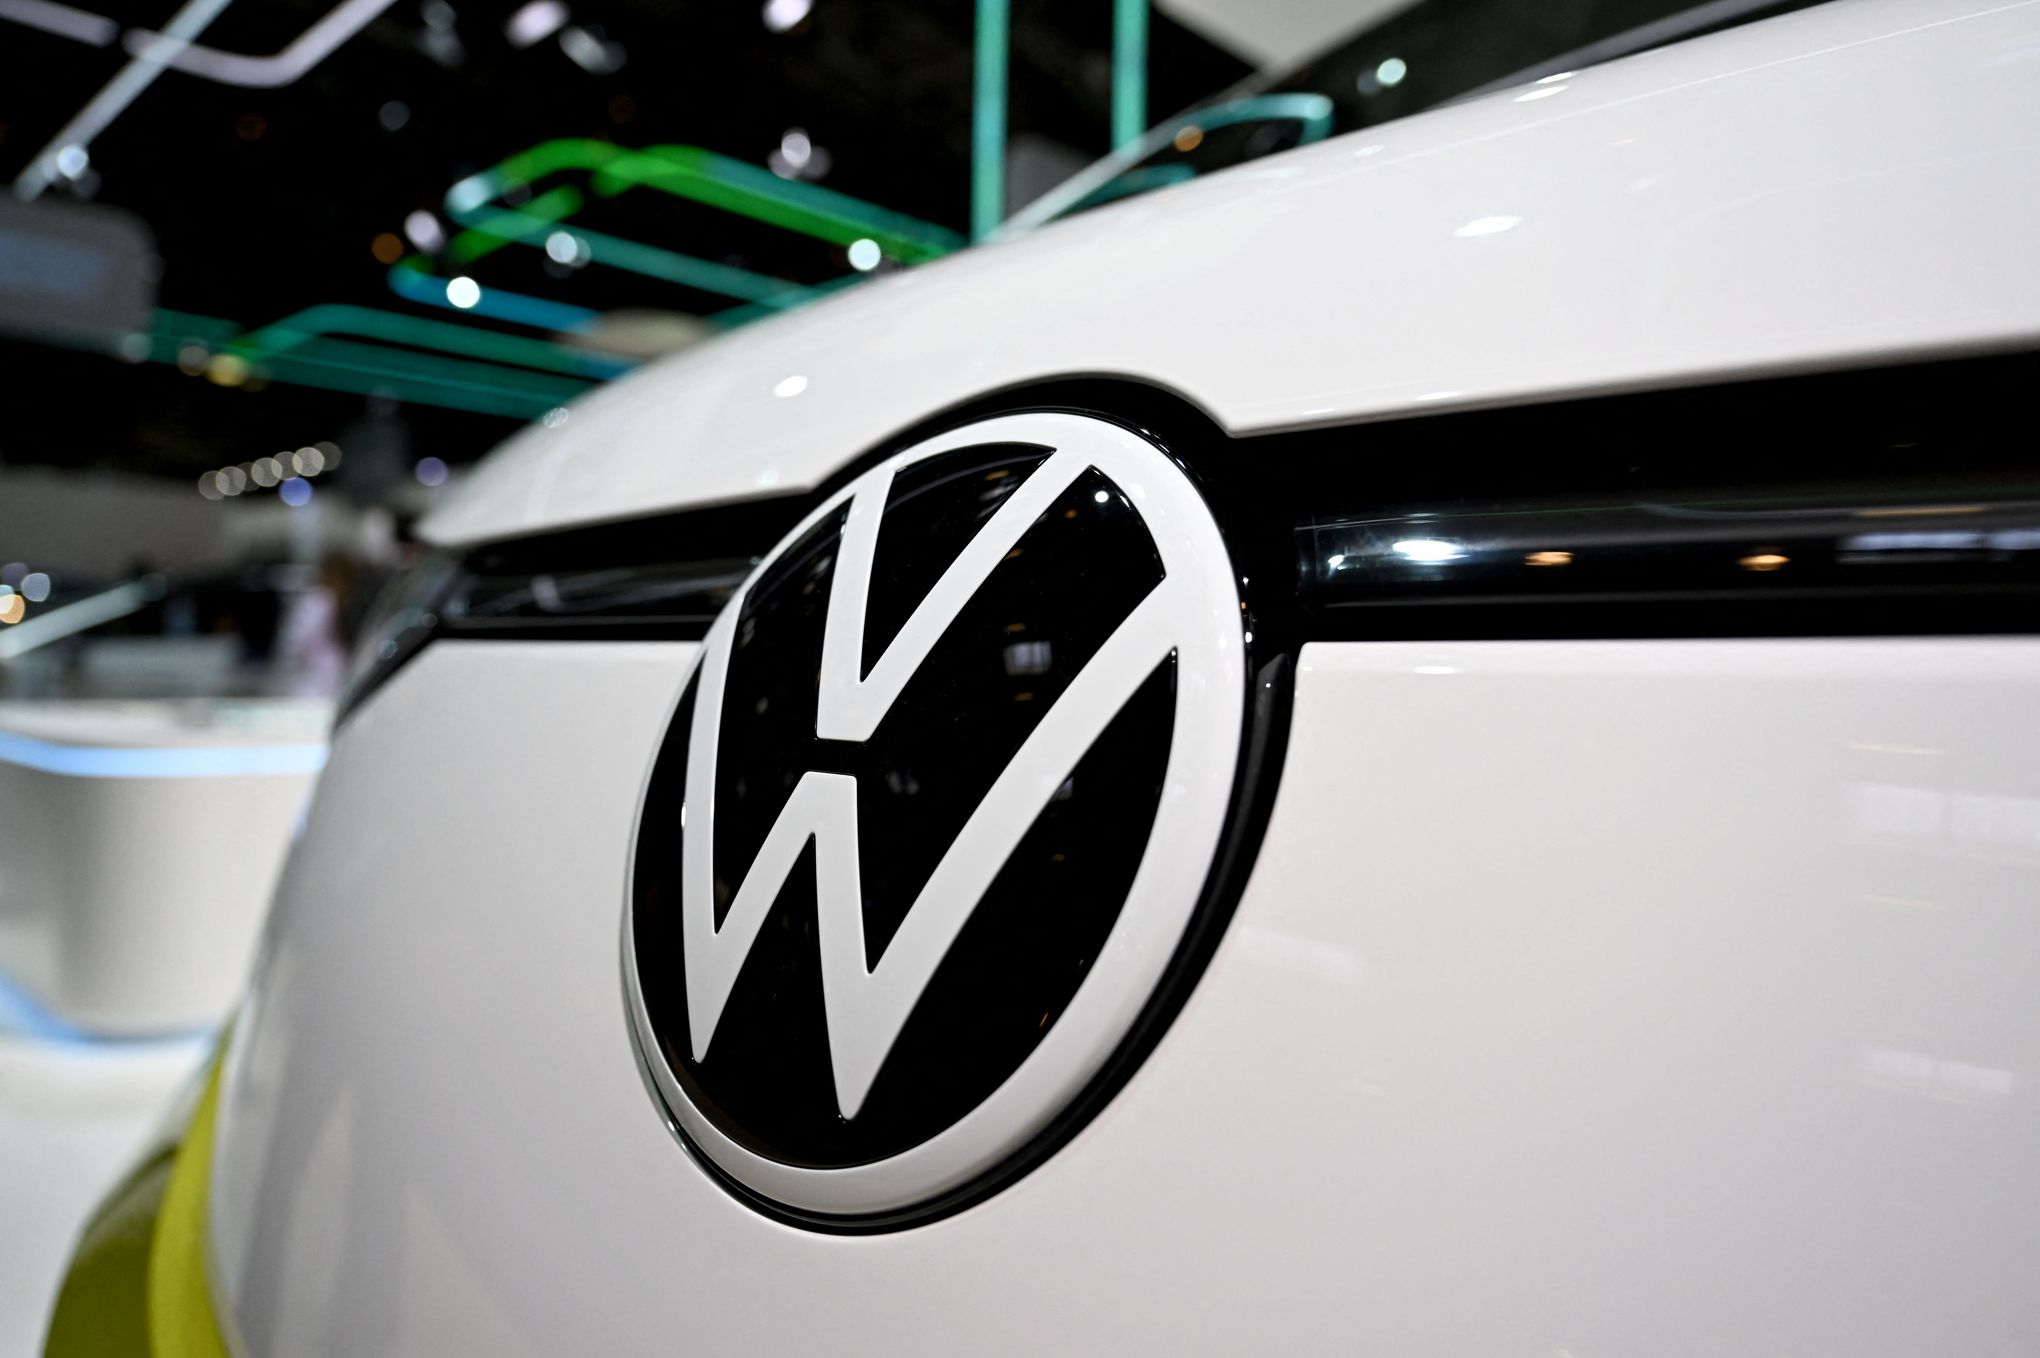 Voiture électrique : Volkswagen se met au leasing social avec deux modèles